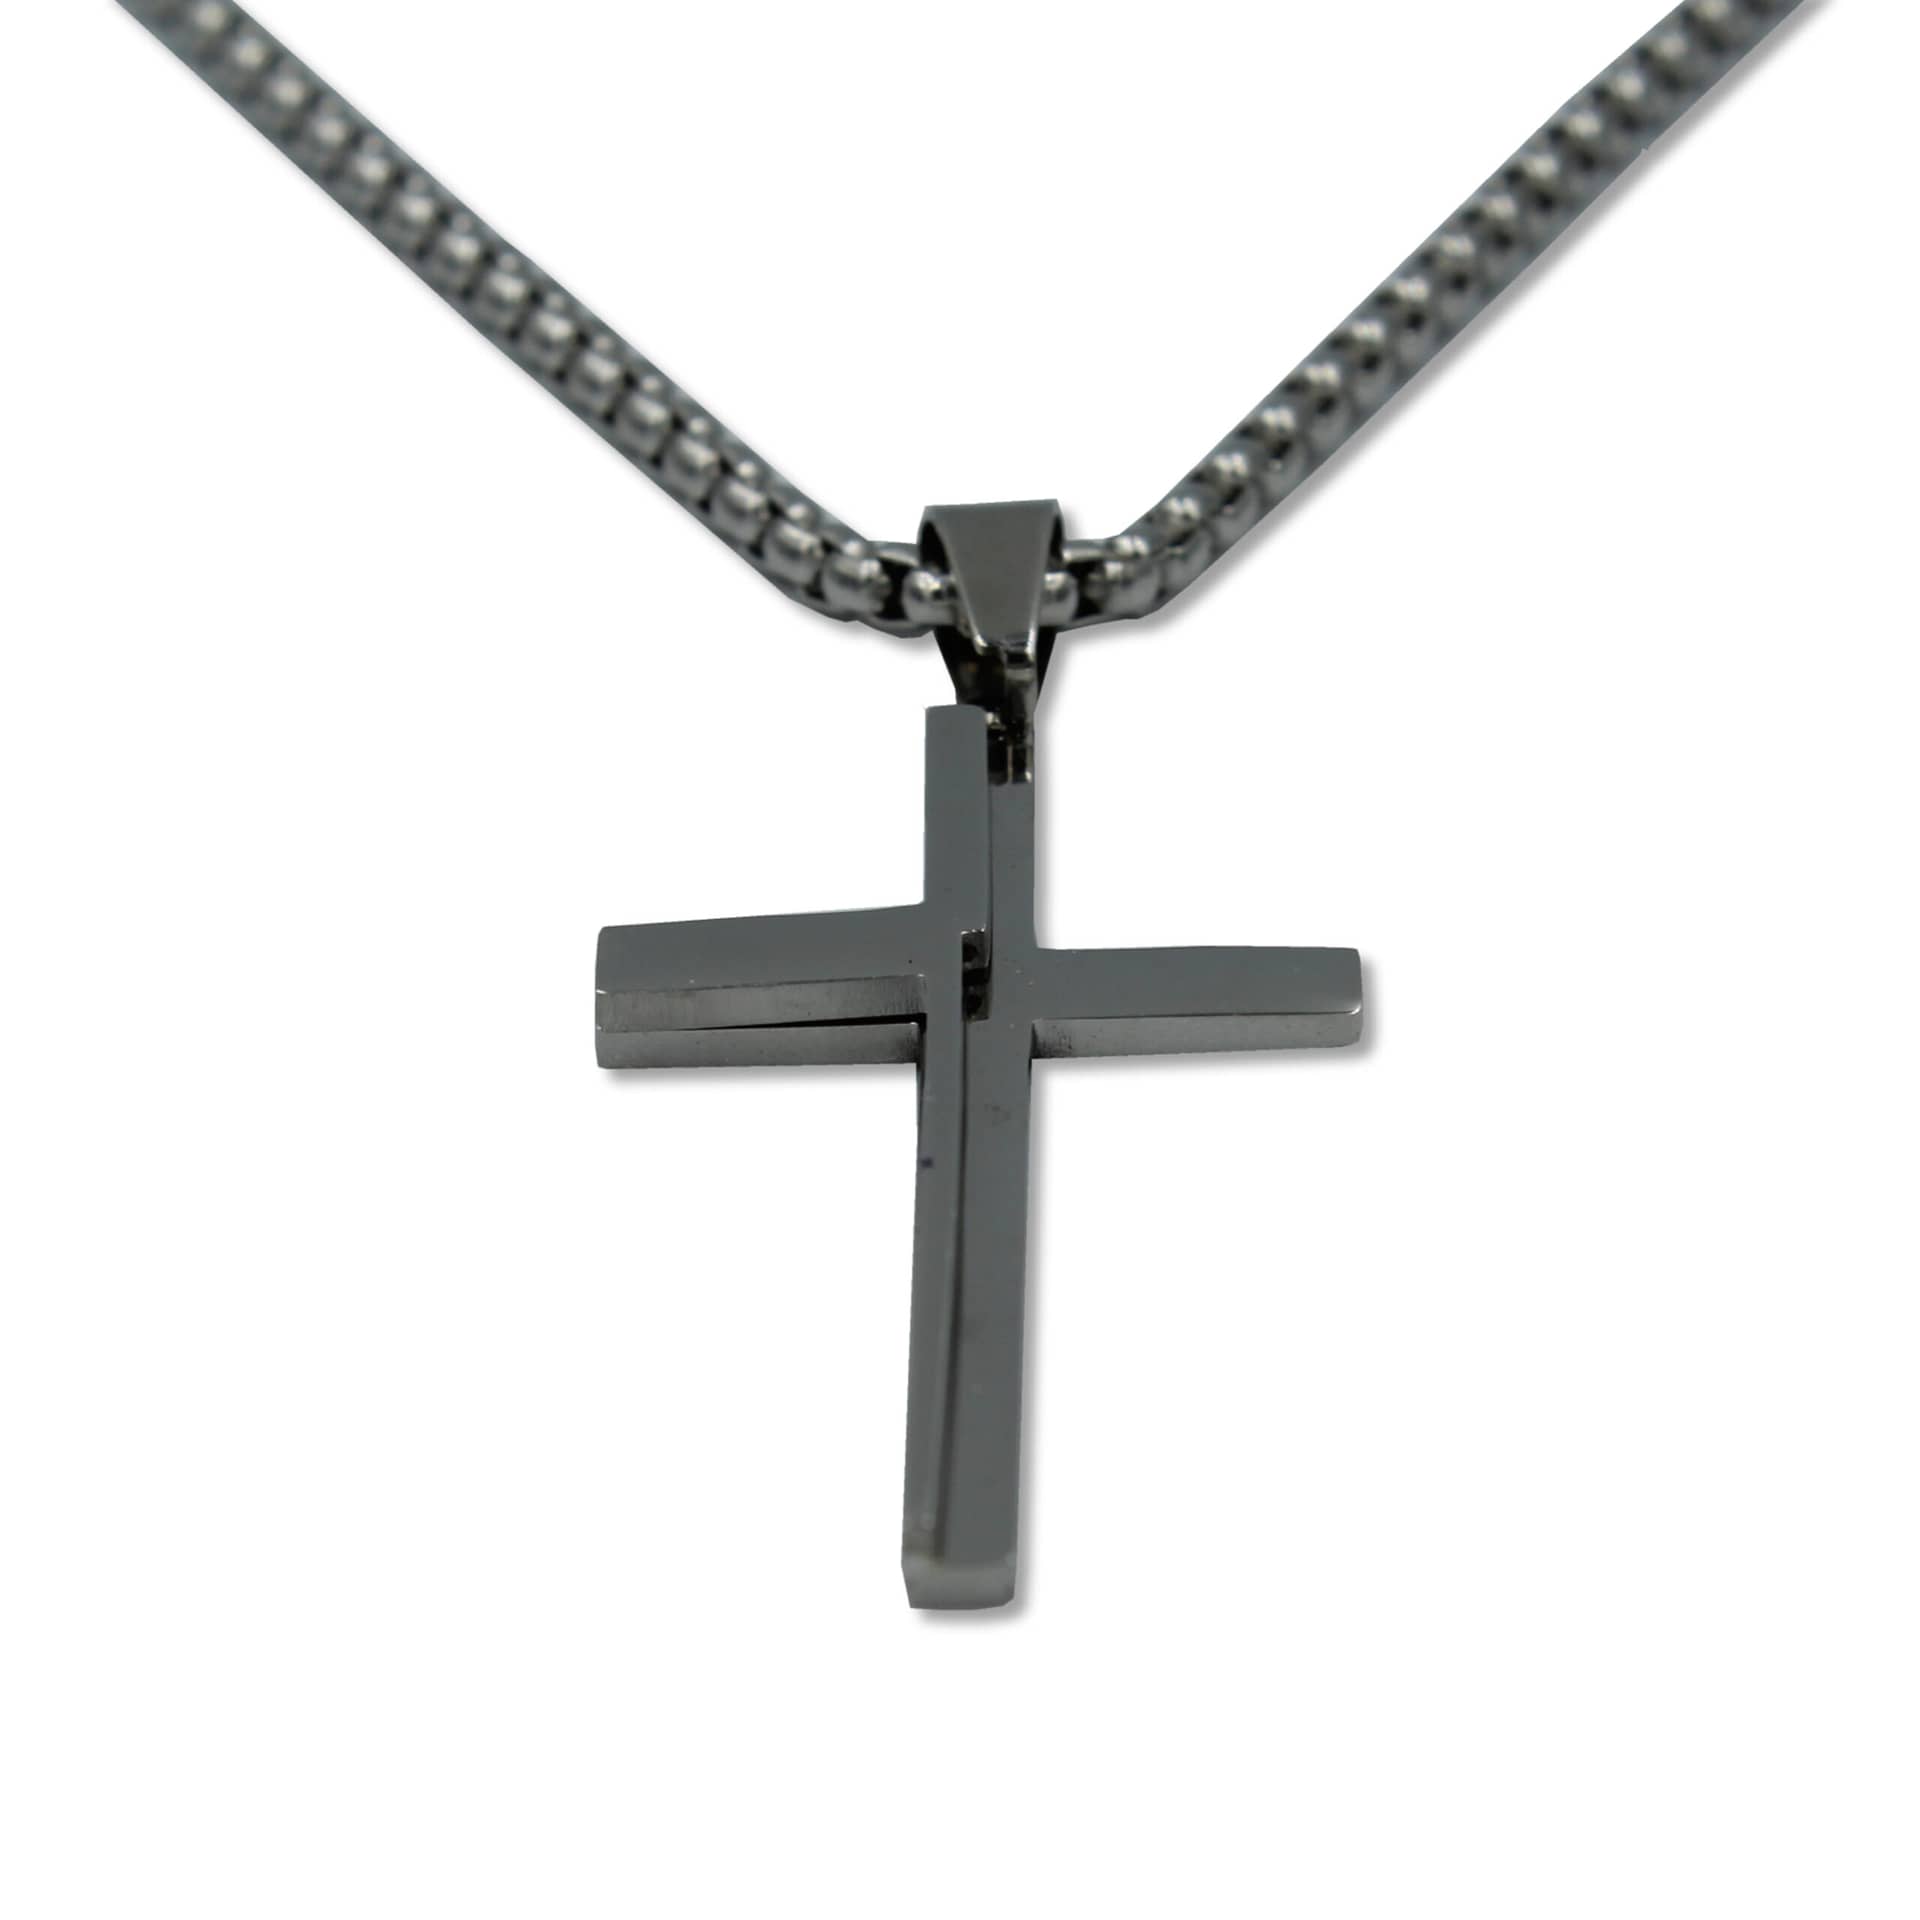 Ανδρικός ατσάλινος σταυρός με αλυσίδα